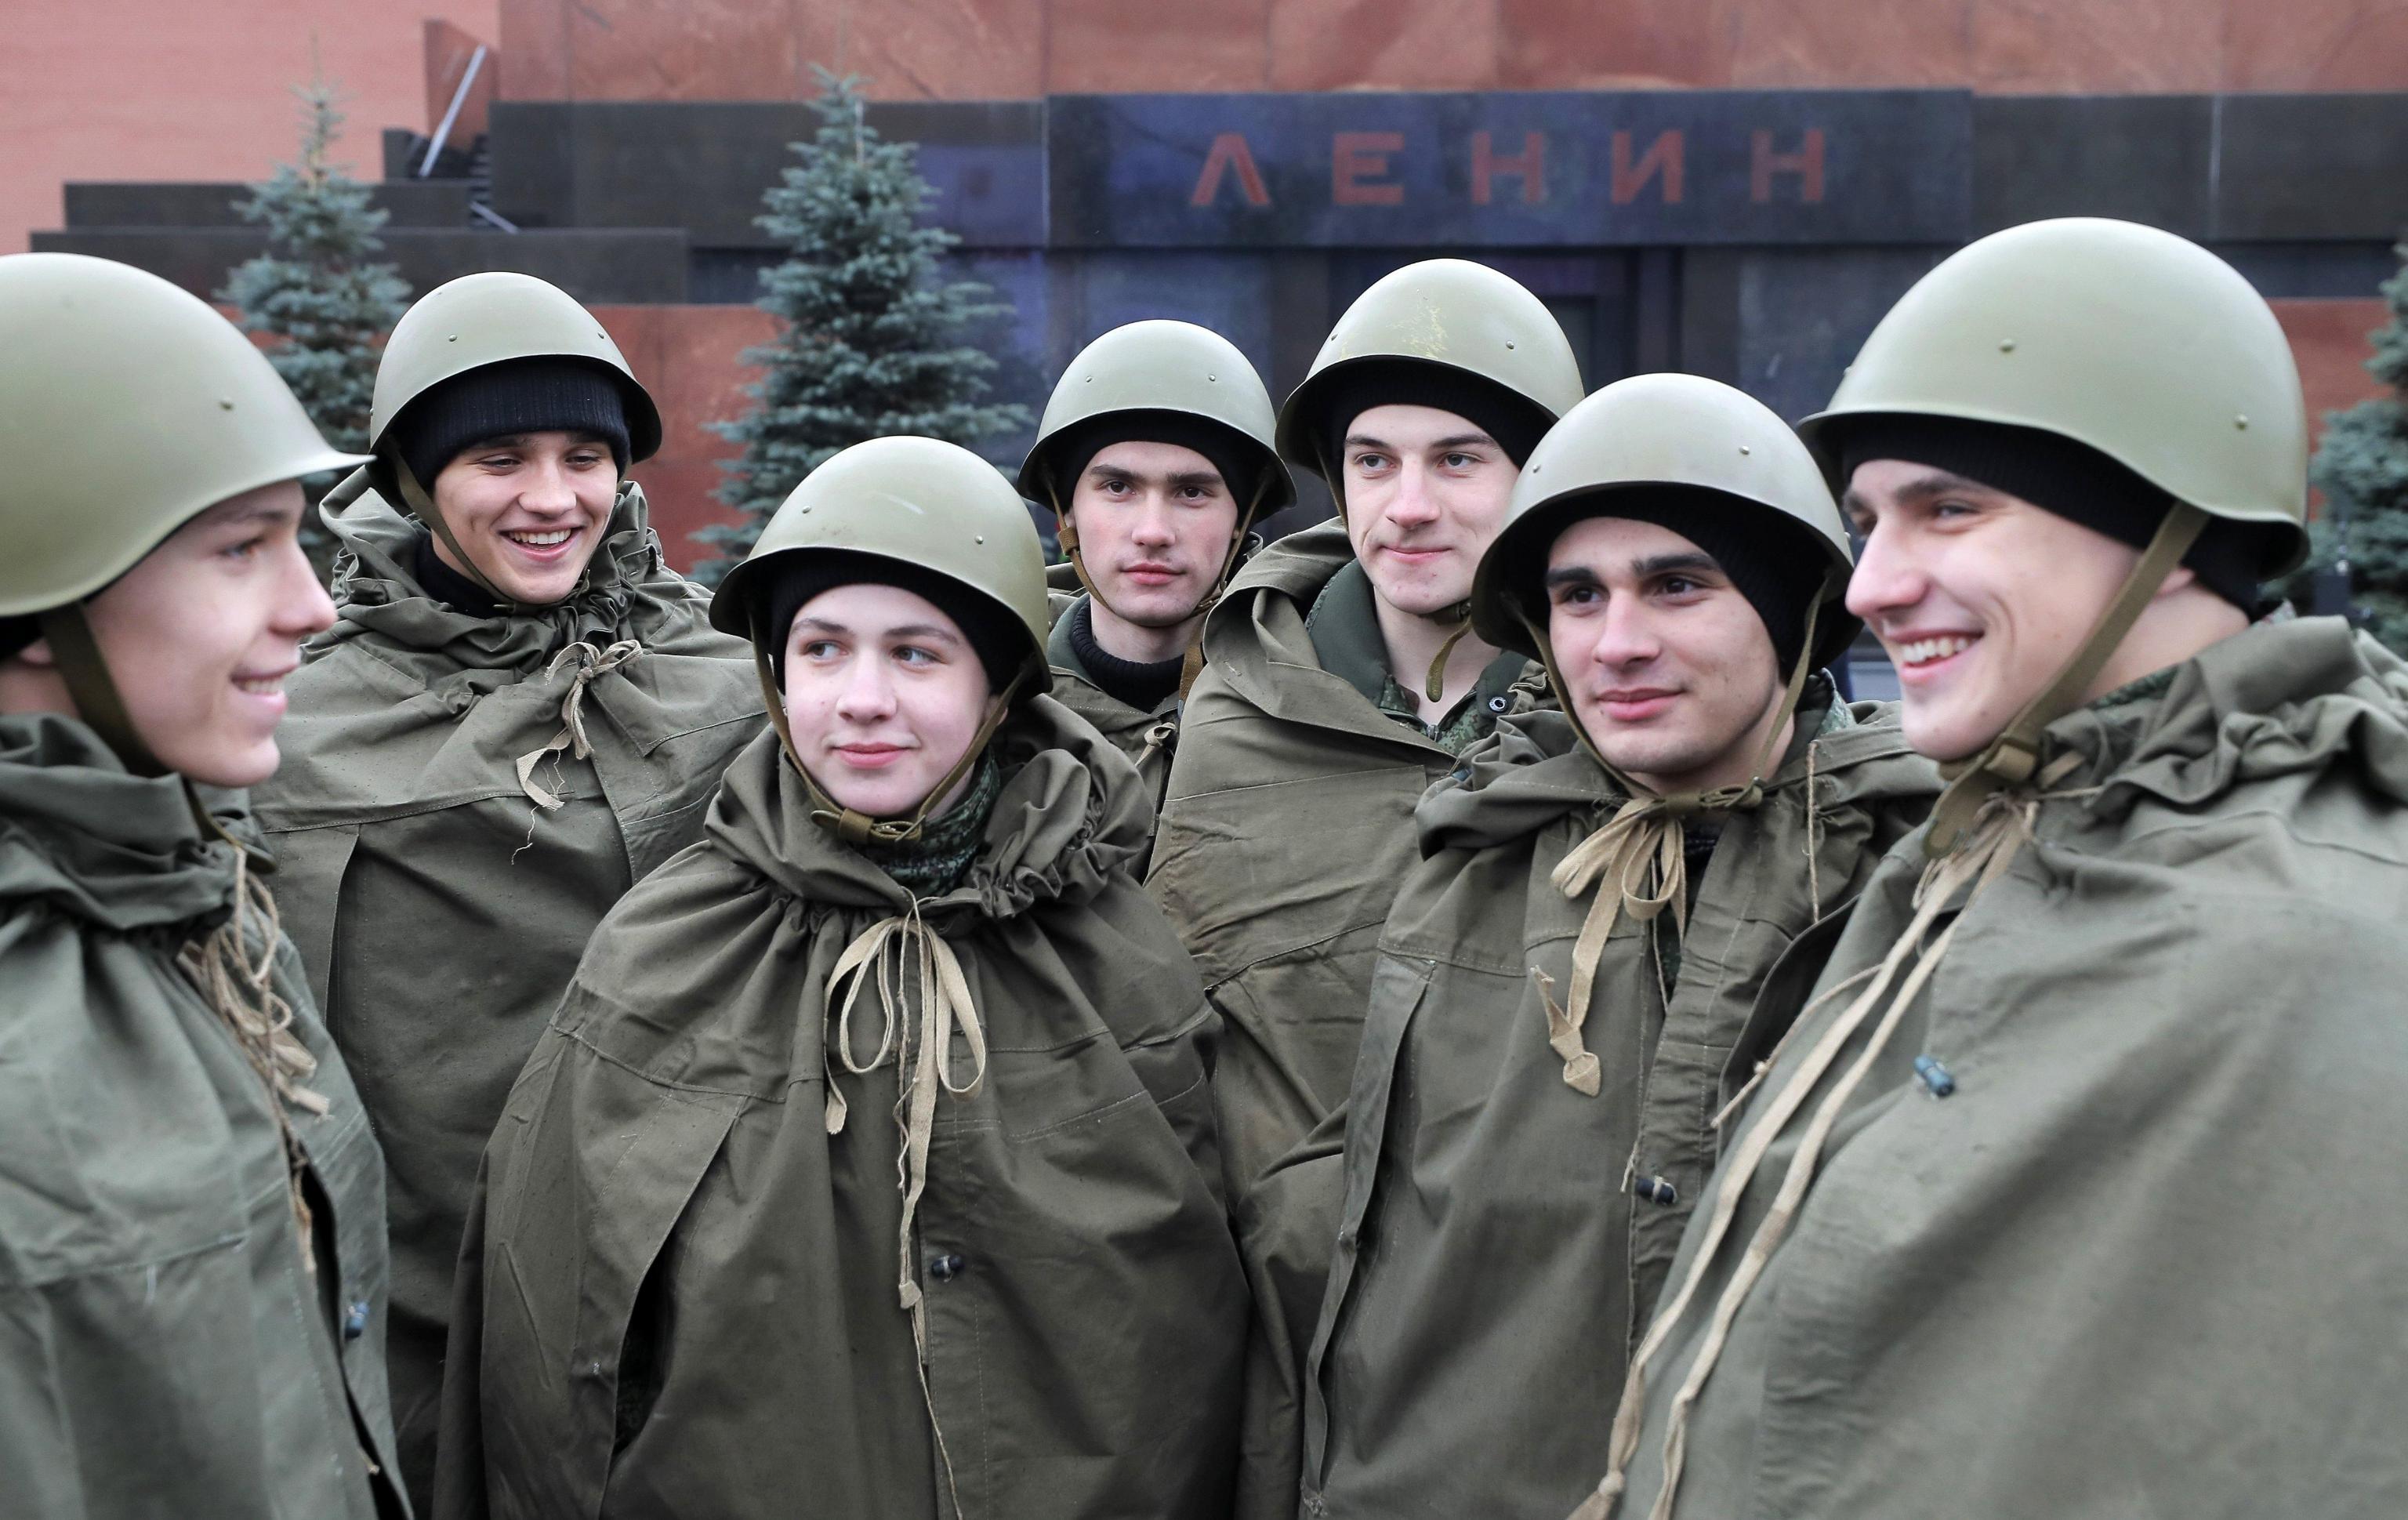 Giovani russi in divisa storica, con elmetto e pastrano per difendersi dalla pioggia